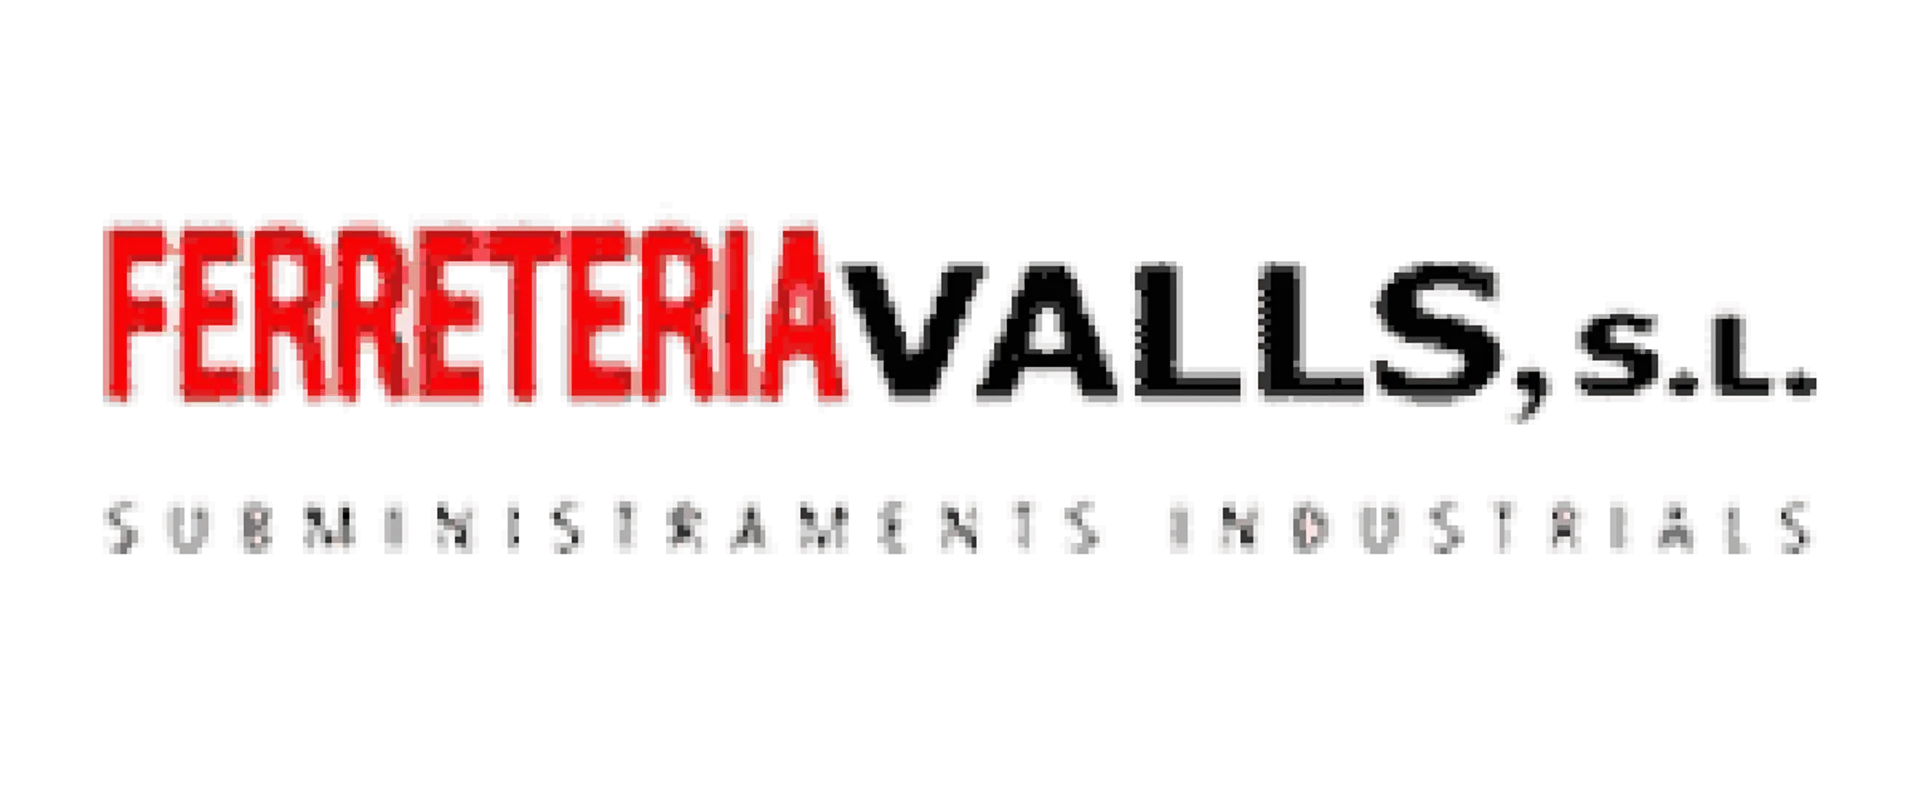 FERRETERÍA VALLS logo